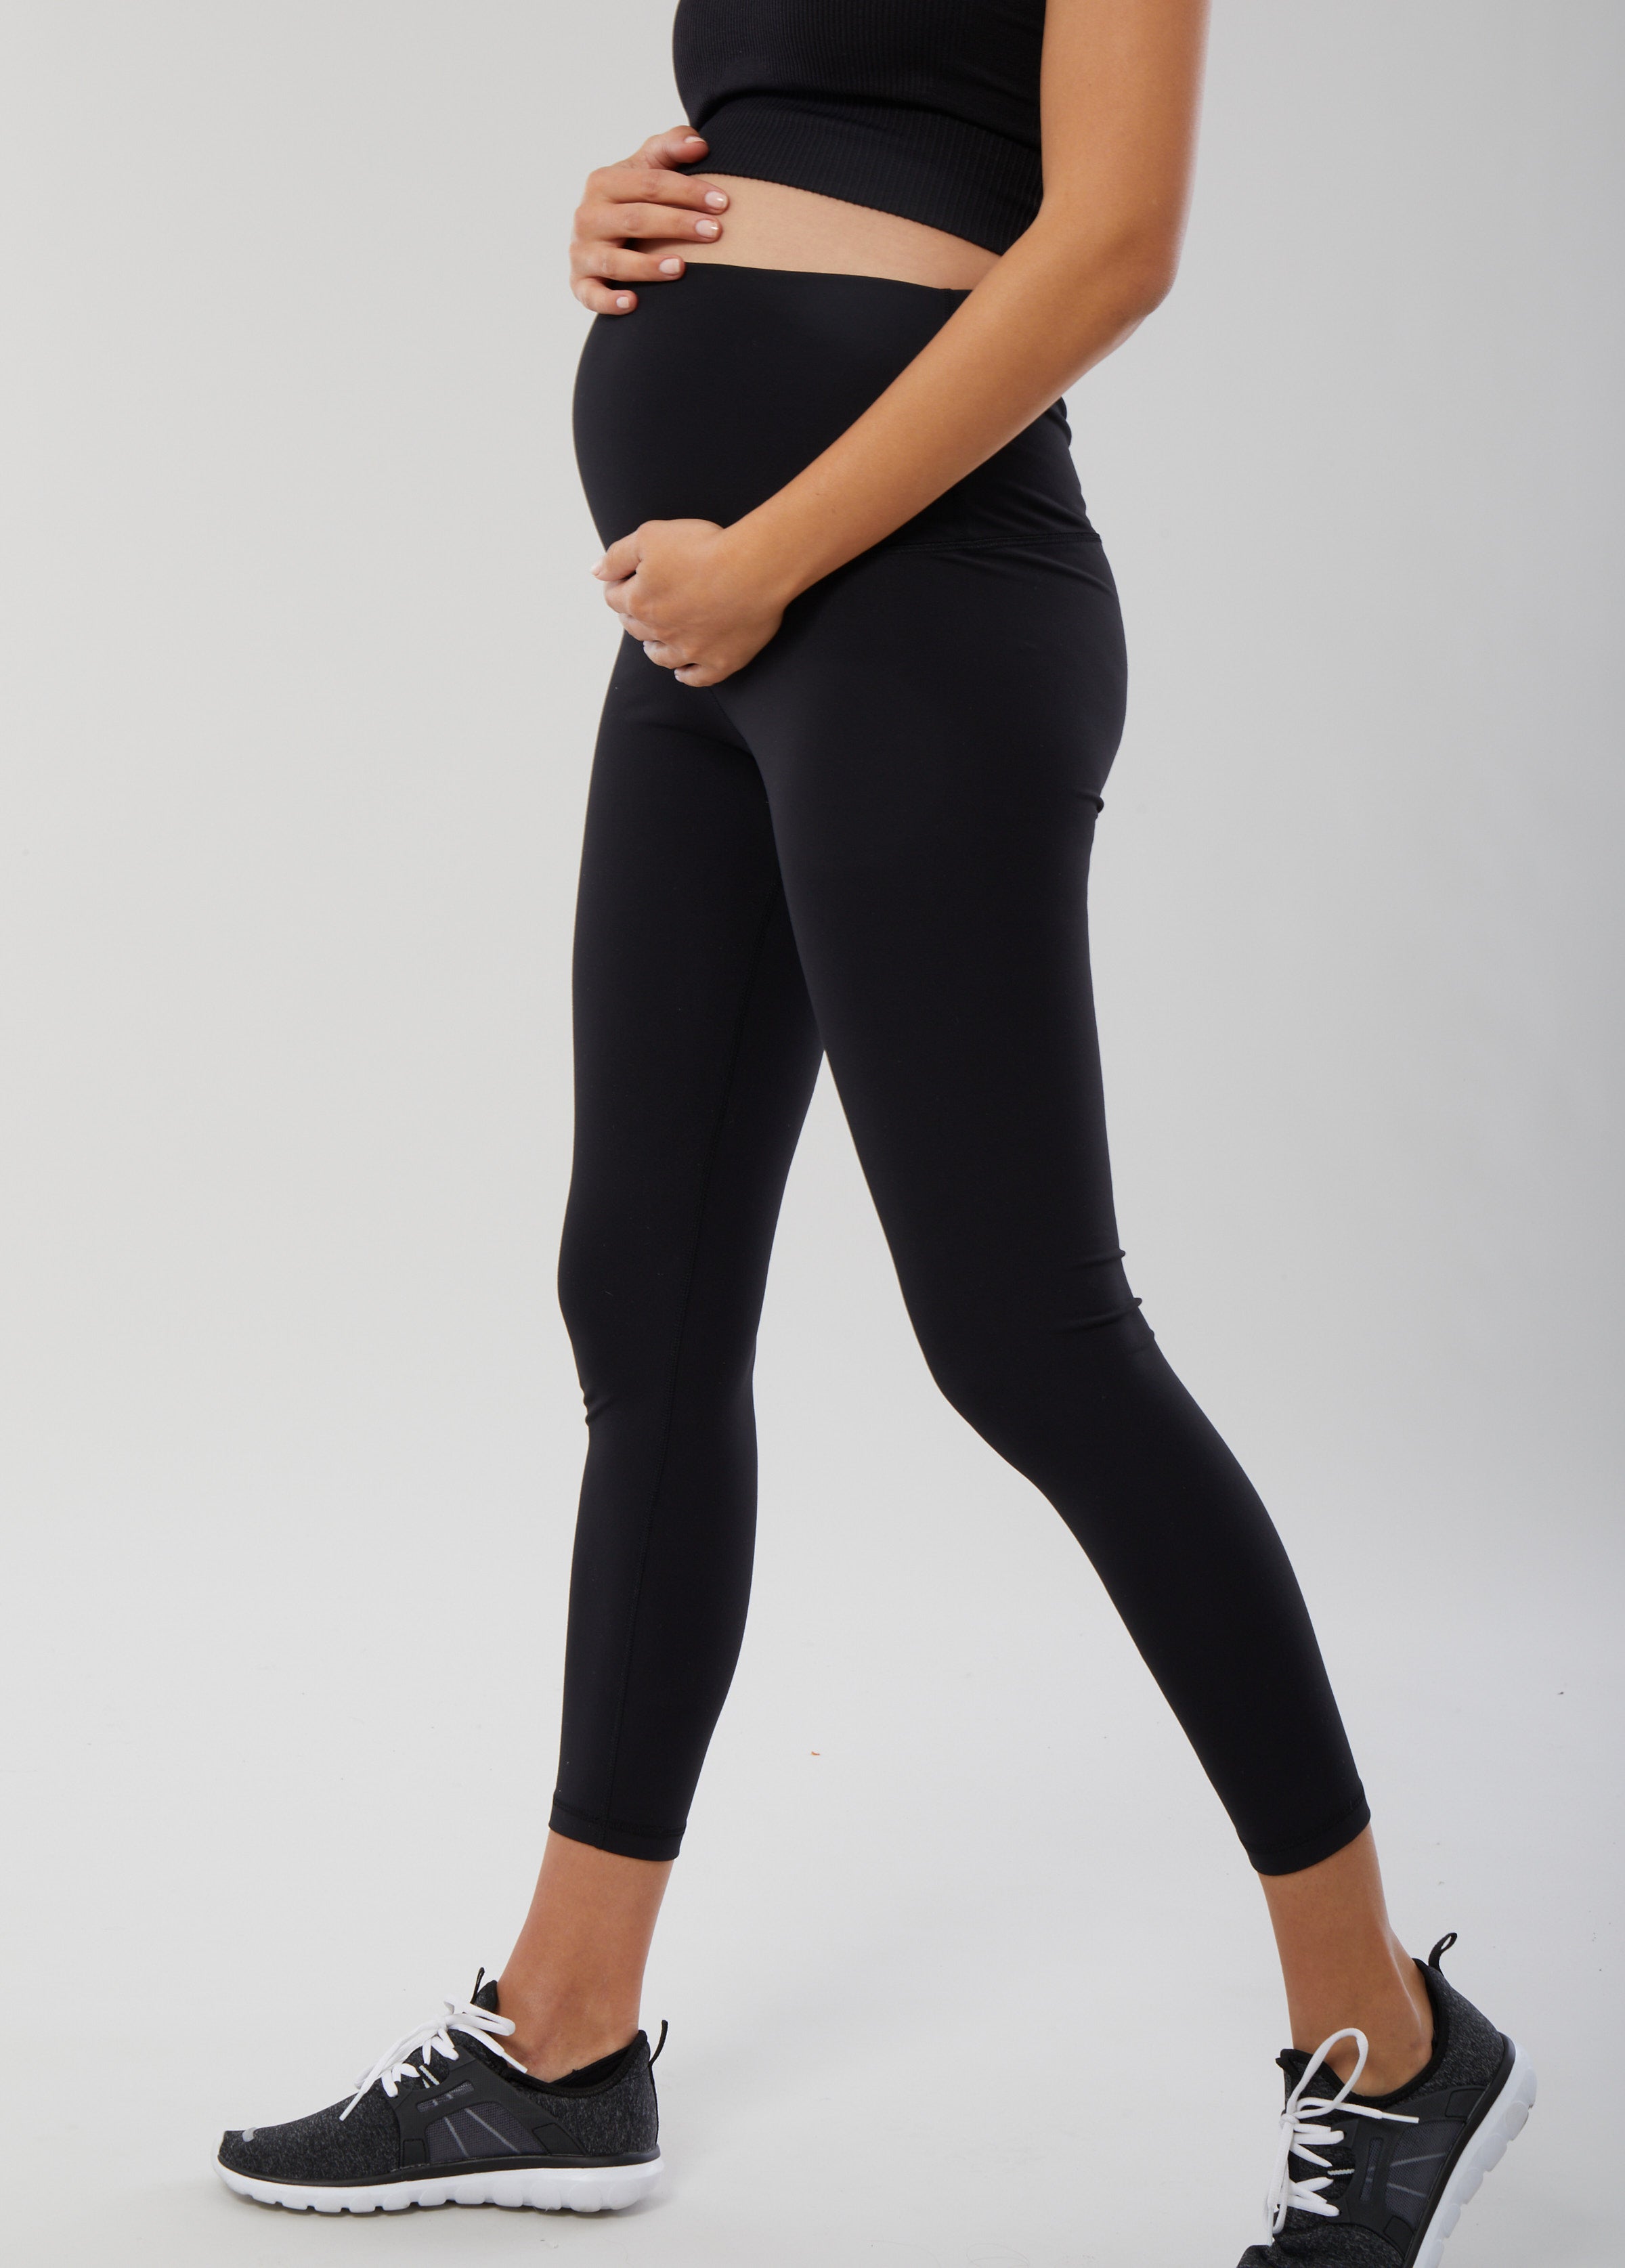 Lululemon Align Leggings Review- Best leggings for maternity and